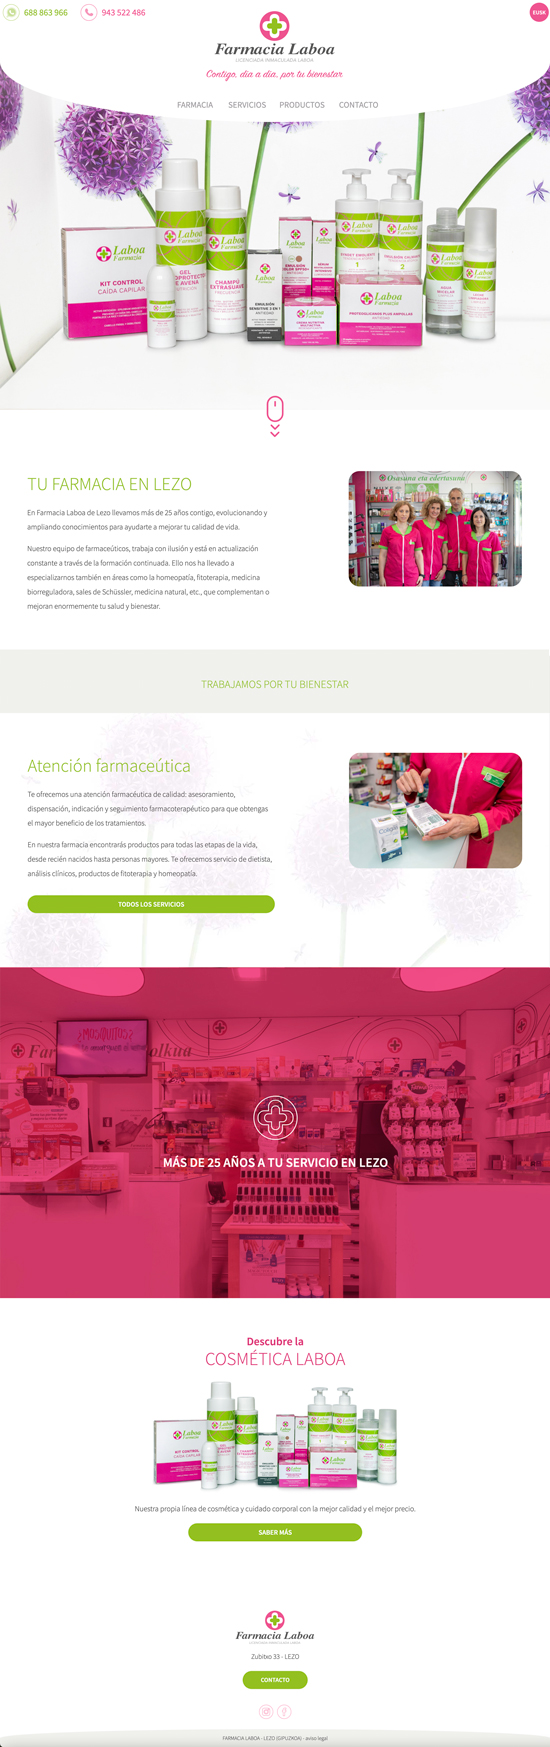 Diseño web de la farmacia laboa. webs en lezo, gipuzkoa